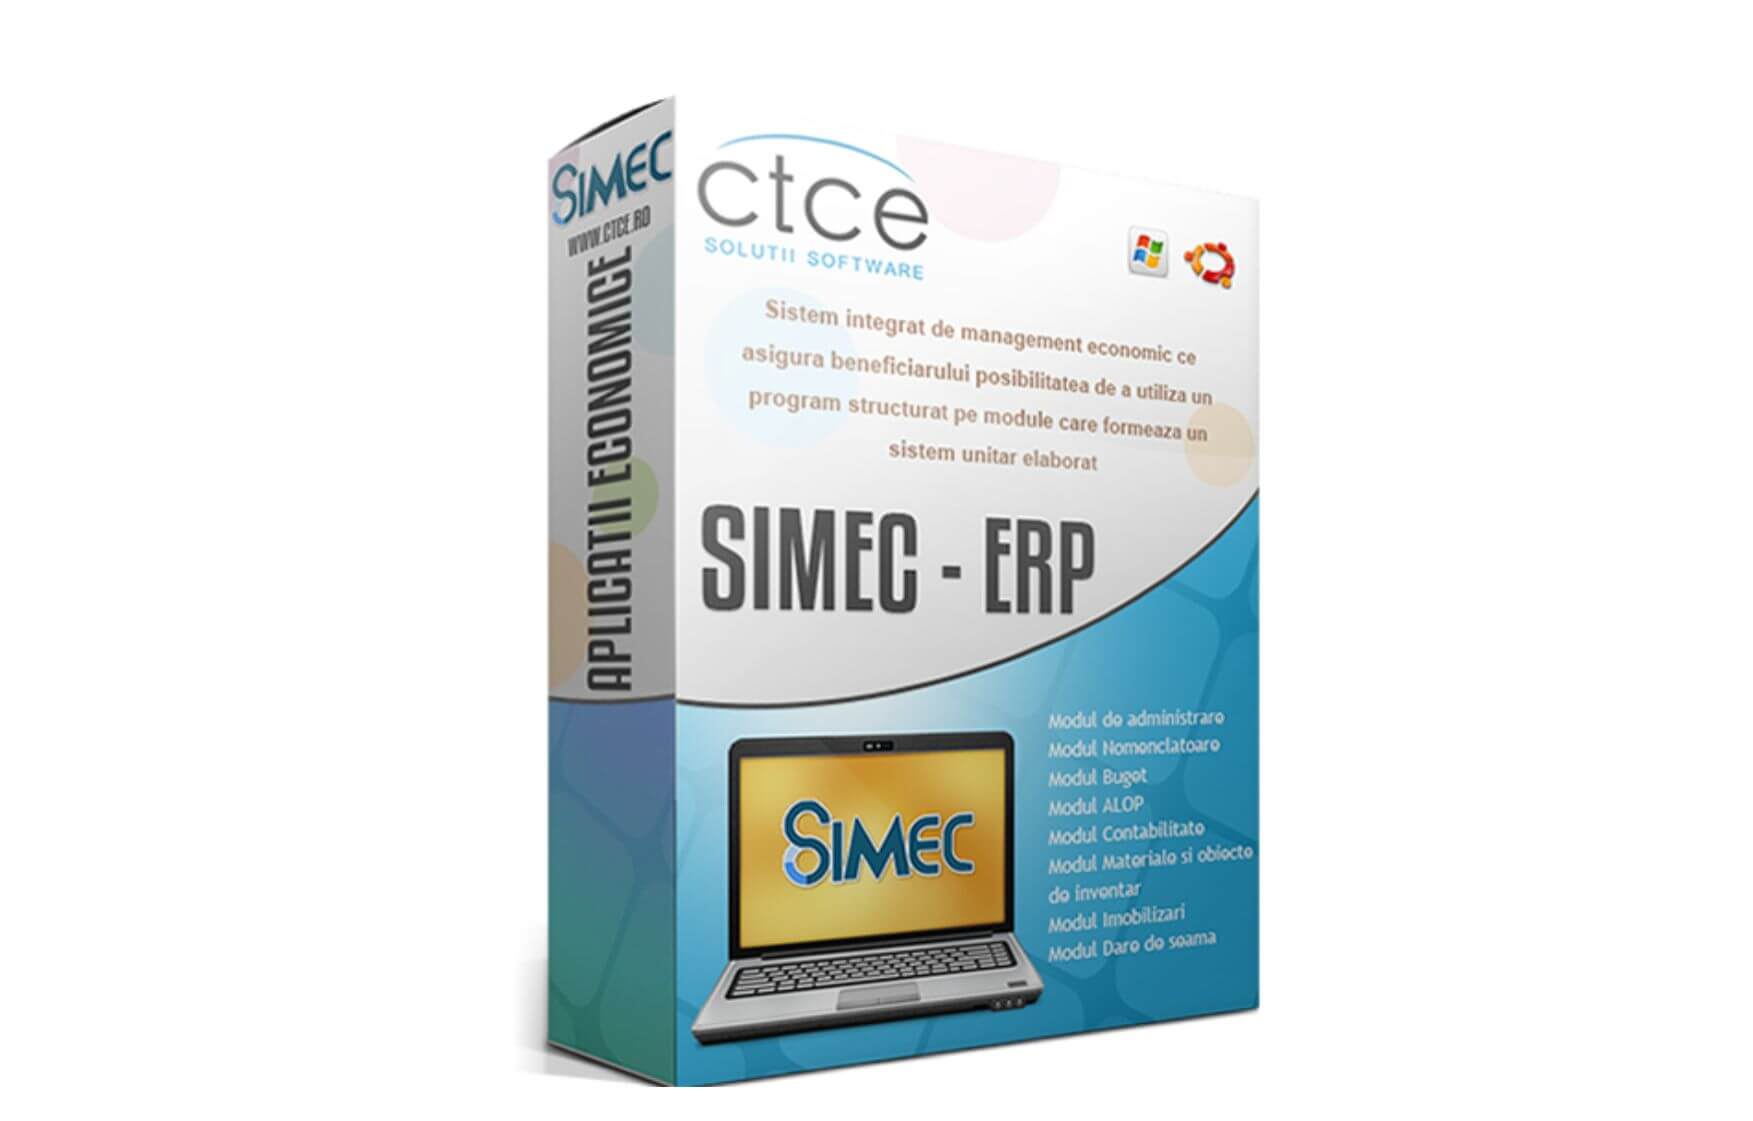 SIMEC - aplicatie CTCE - Centrul Teritorial de Calcul Electronic